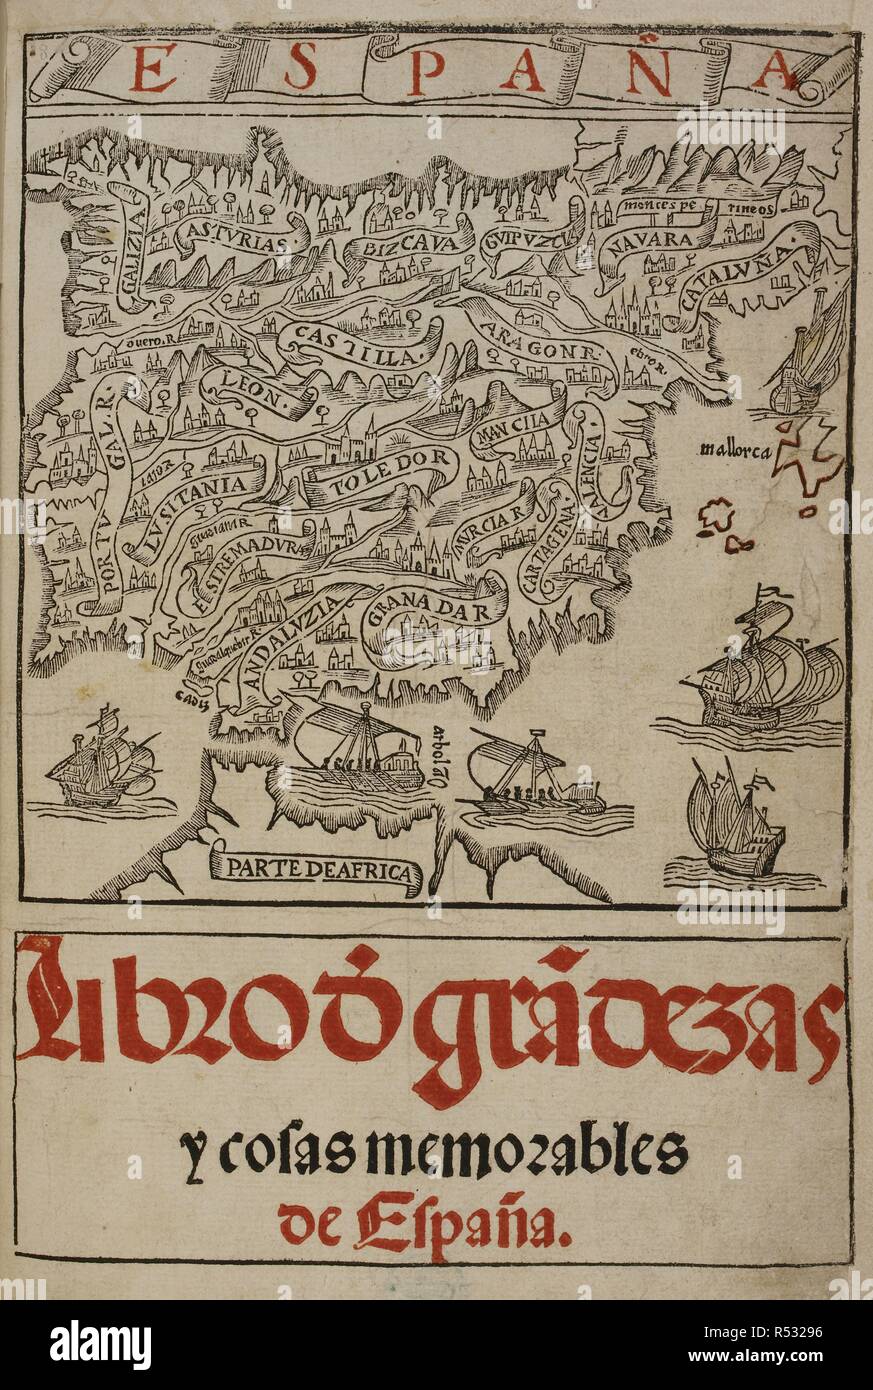 Mapa de Espana. A  map of Spain. 16th century. . EspaÃ±a. Sevilla, Spain. Published by D. de Robertis, 1549. Source: G.6419 title page. Language: Spanish. Stock Photo